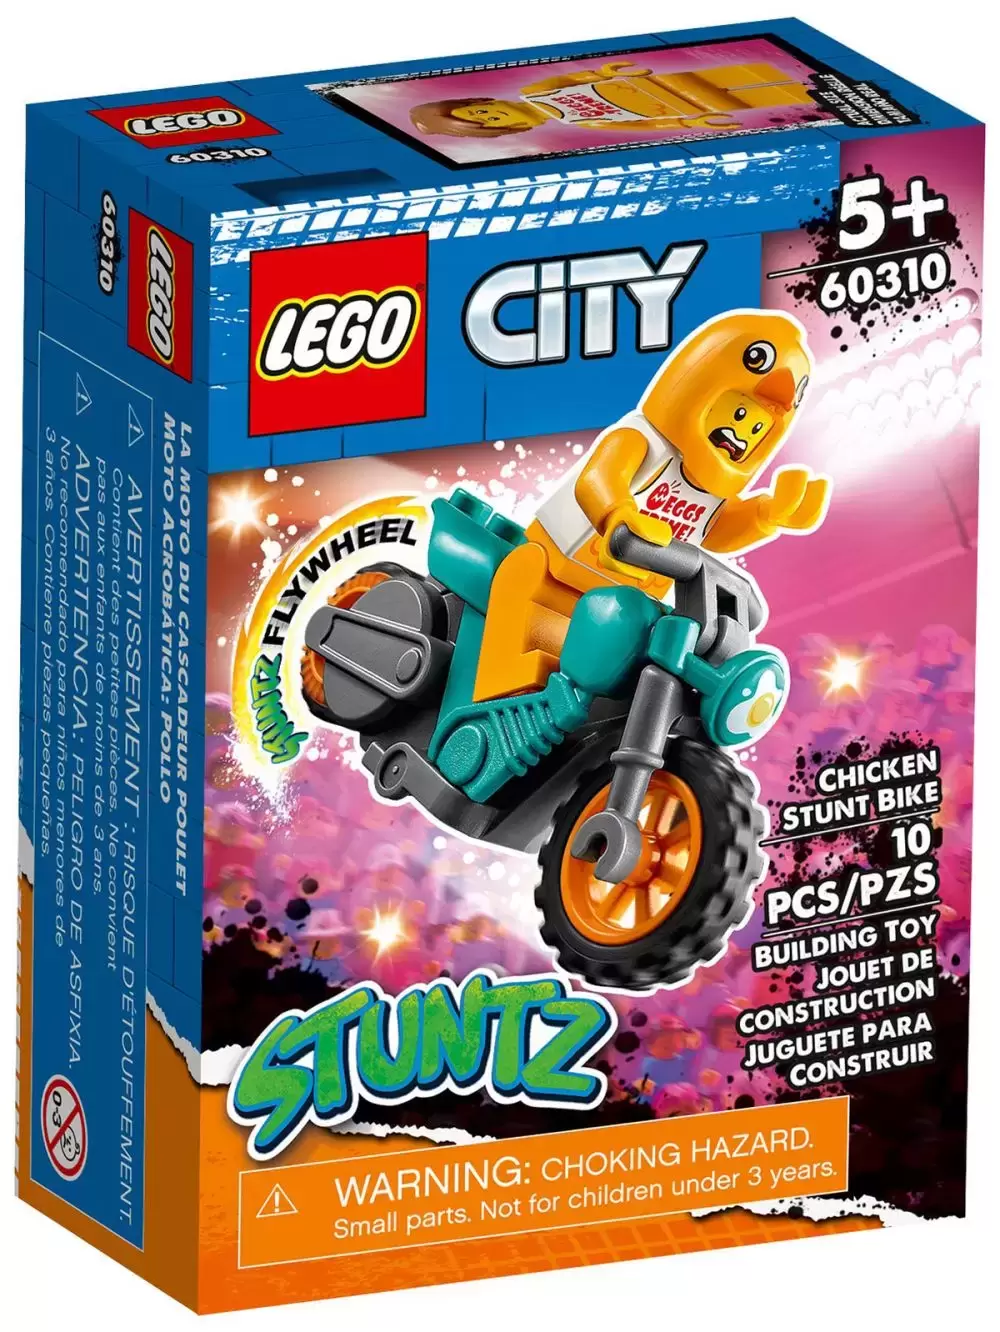 LEGO CITY - Chicken Stunt Bike